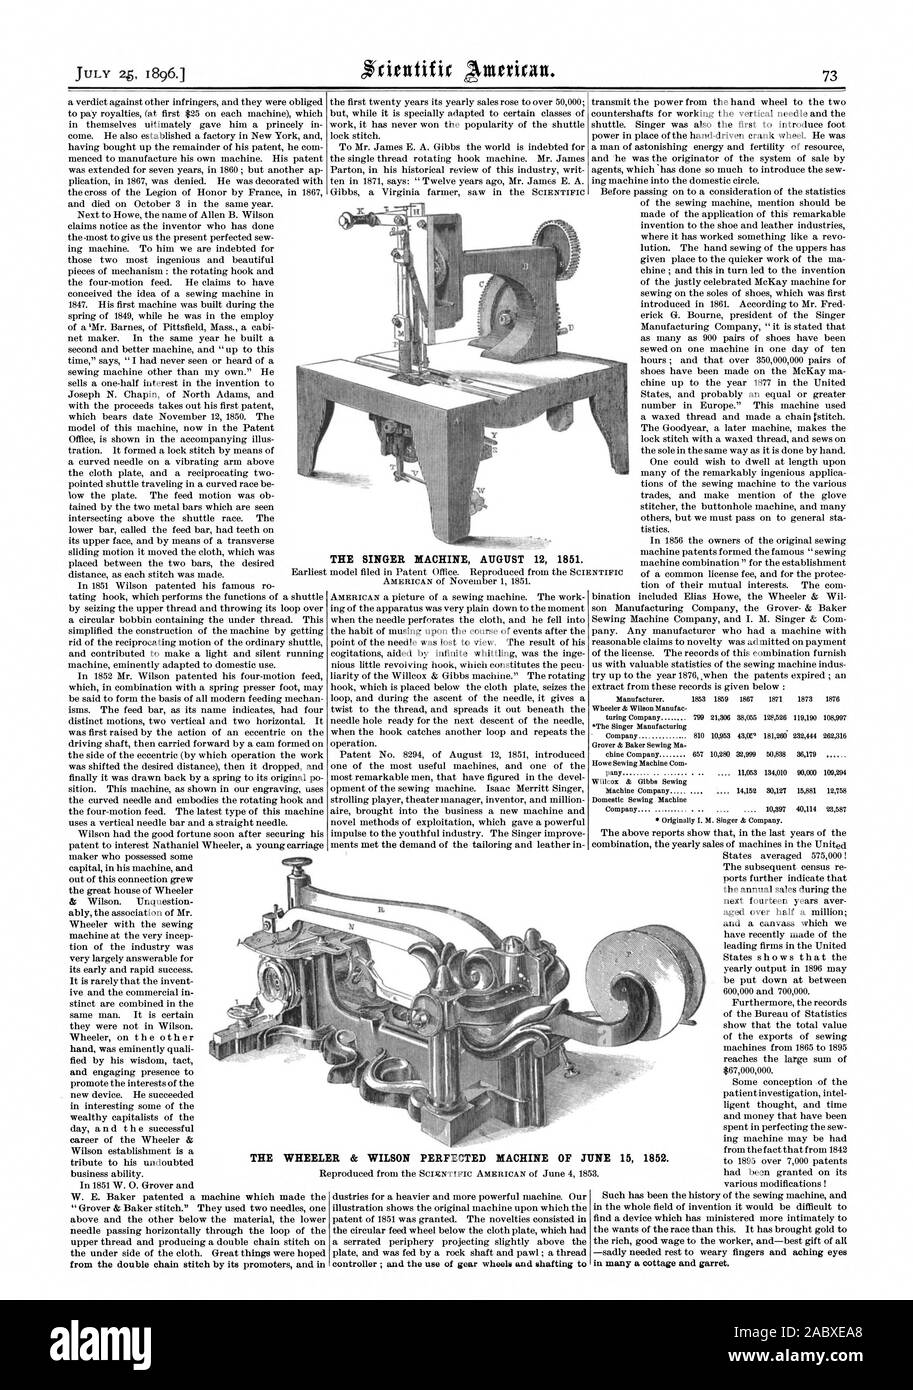 El cantante máquina el 12 de agosto de 1851. Los Wheeler & Wilson perfeccionó la máquina de 15 de junio de 1852, Scientific American, 1896-07-25 Foto de stock